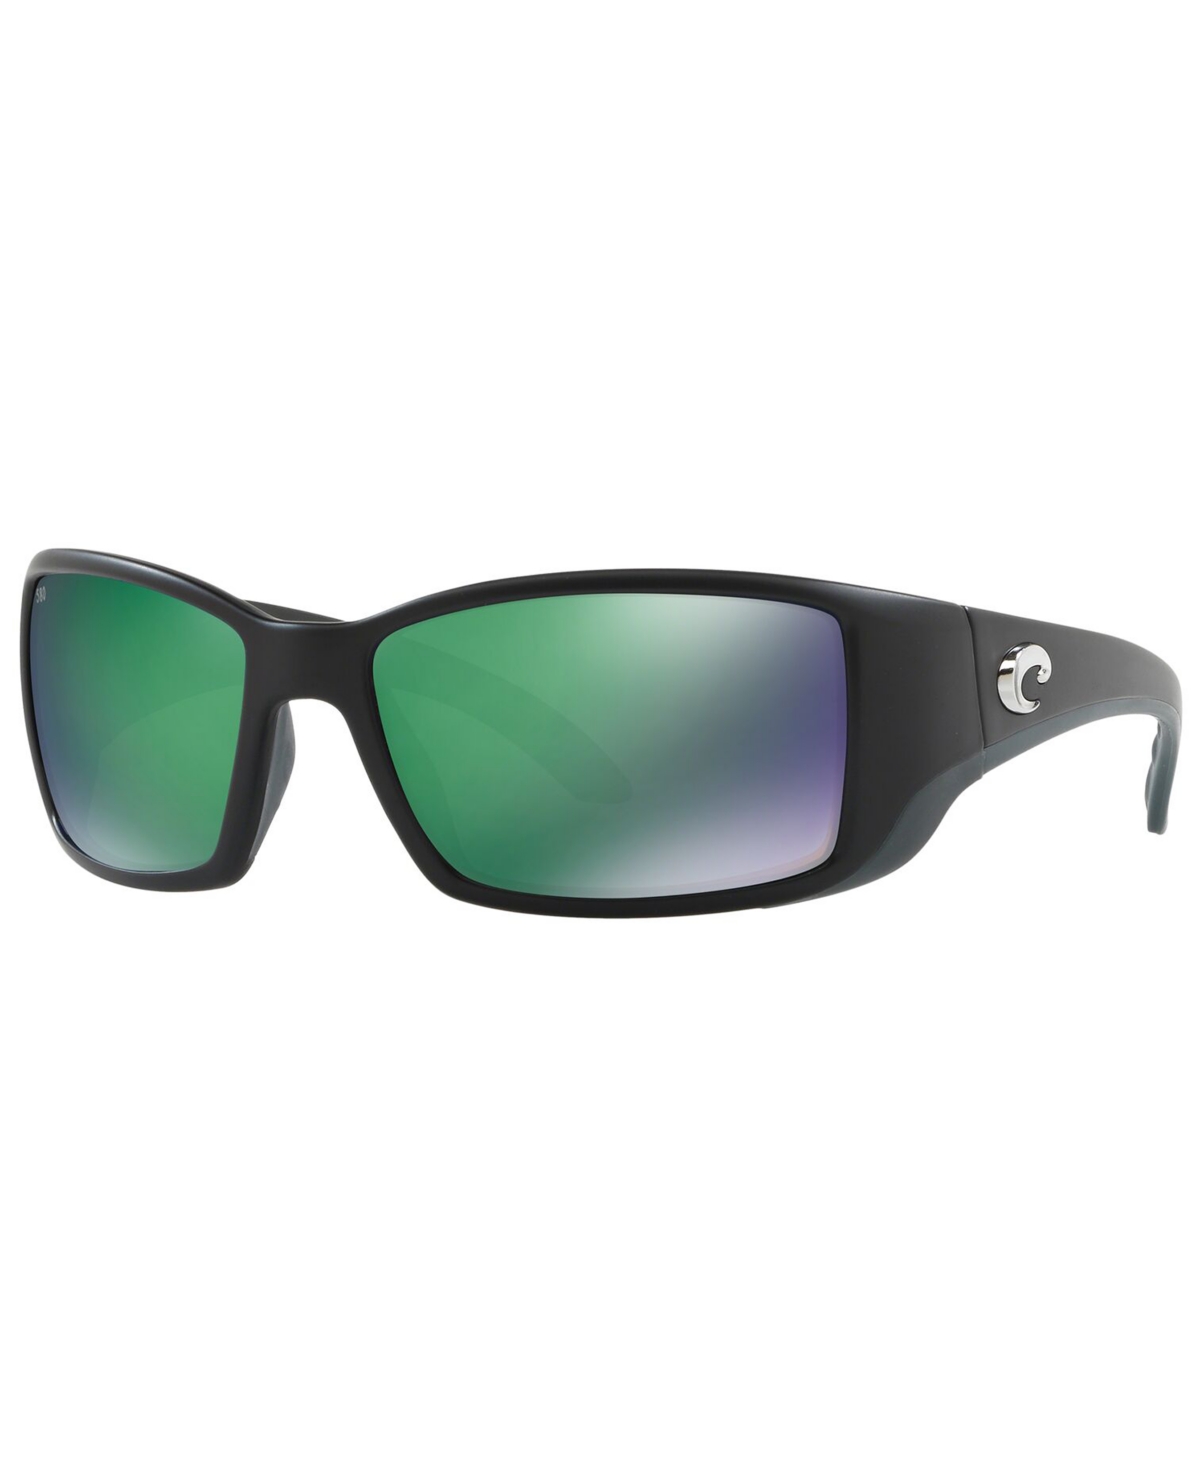 Costa Del Mar Polarized Sunglasses, Blackfin In Black Matte,blue Polar